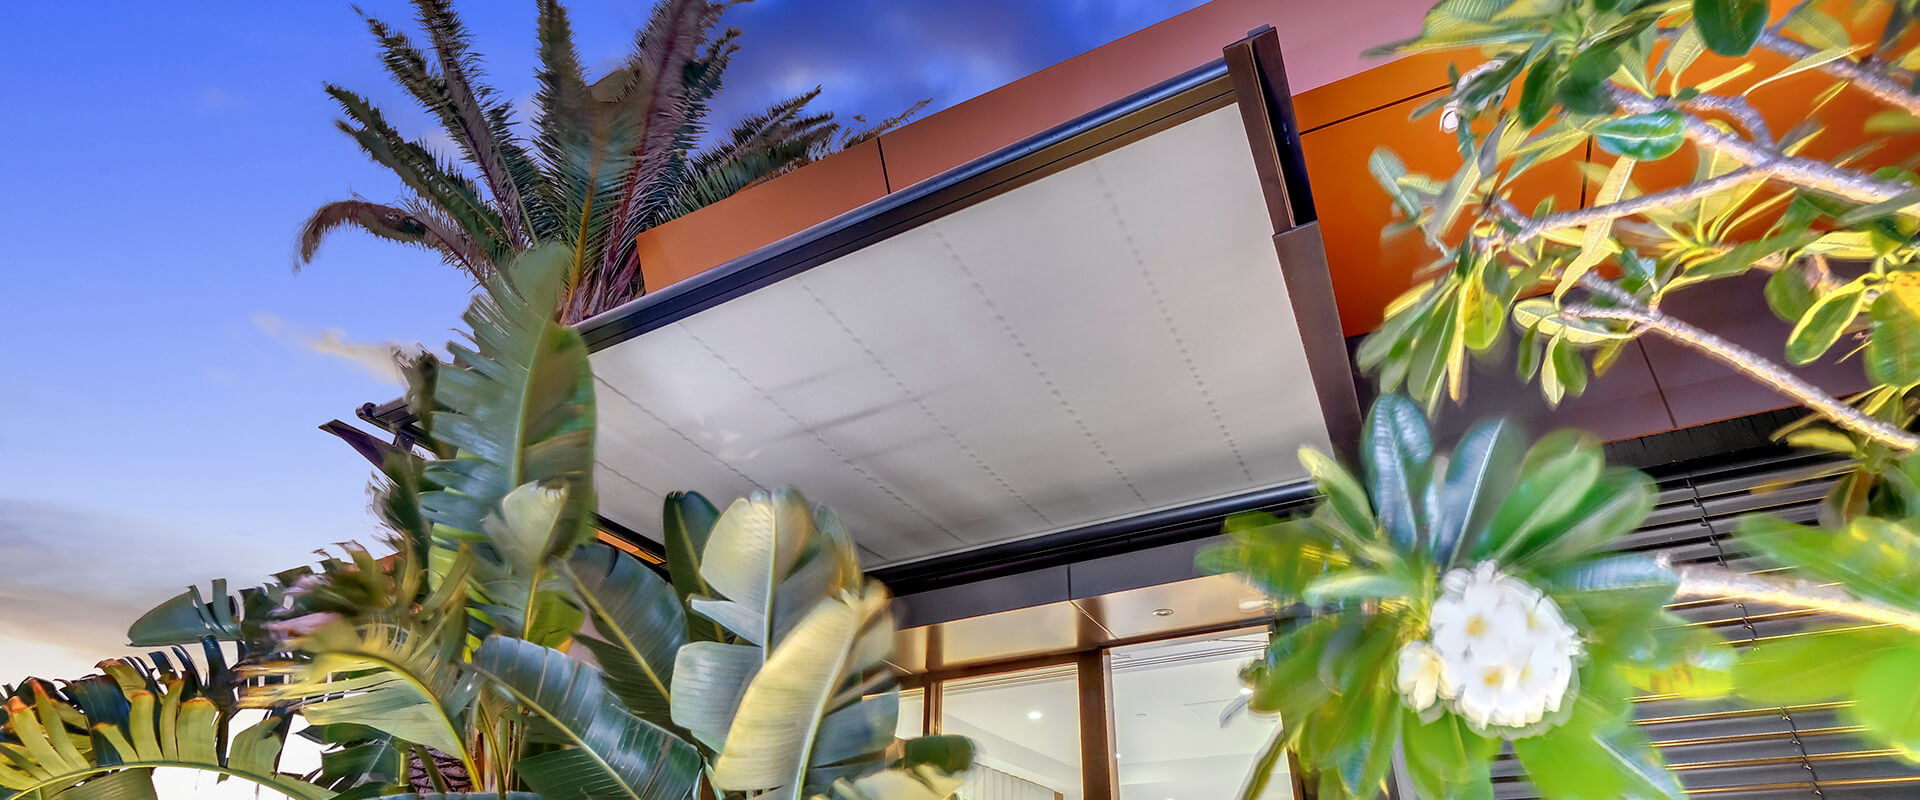 Brisbane markilux 8800 - Emporium folding arm awning for luxury hotel